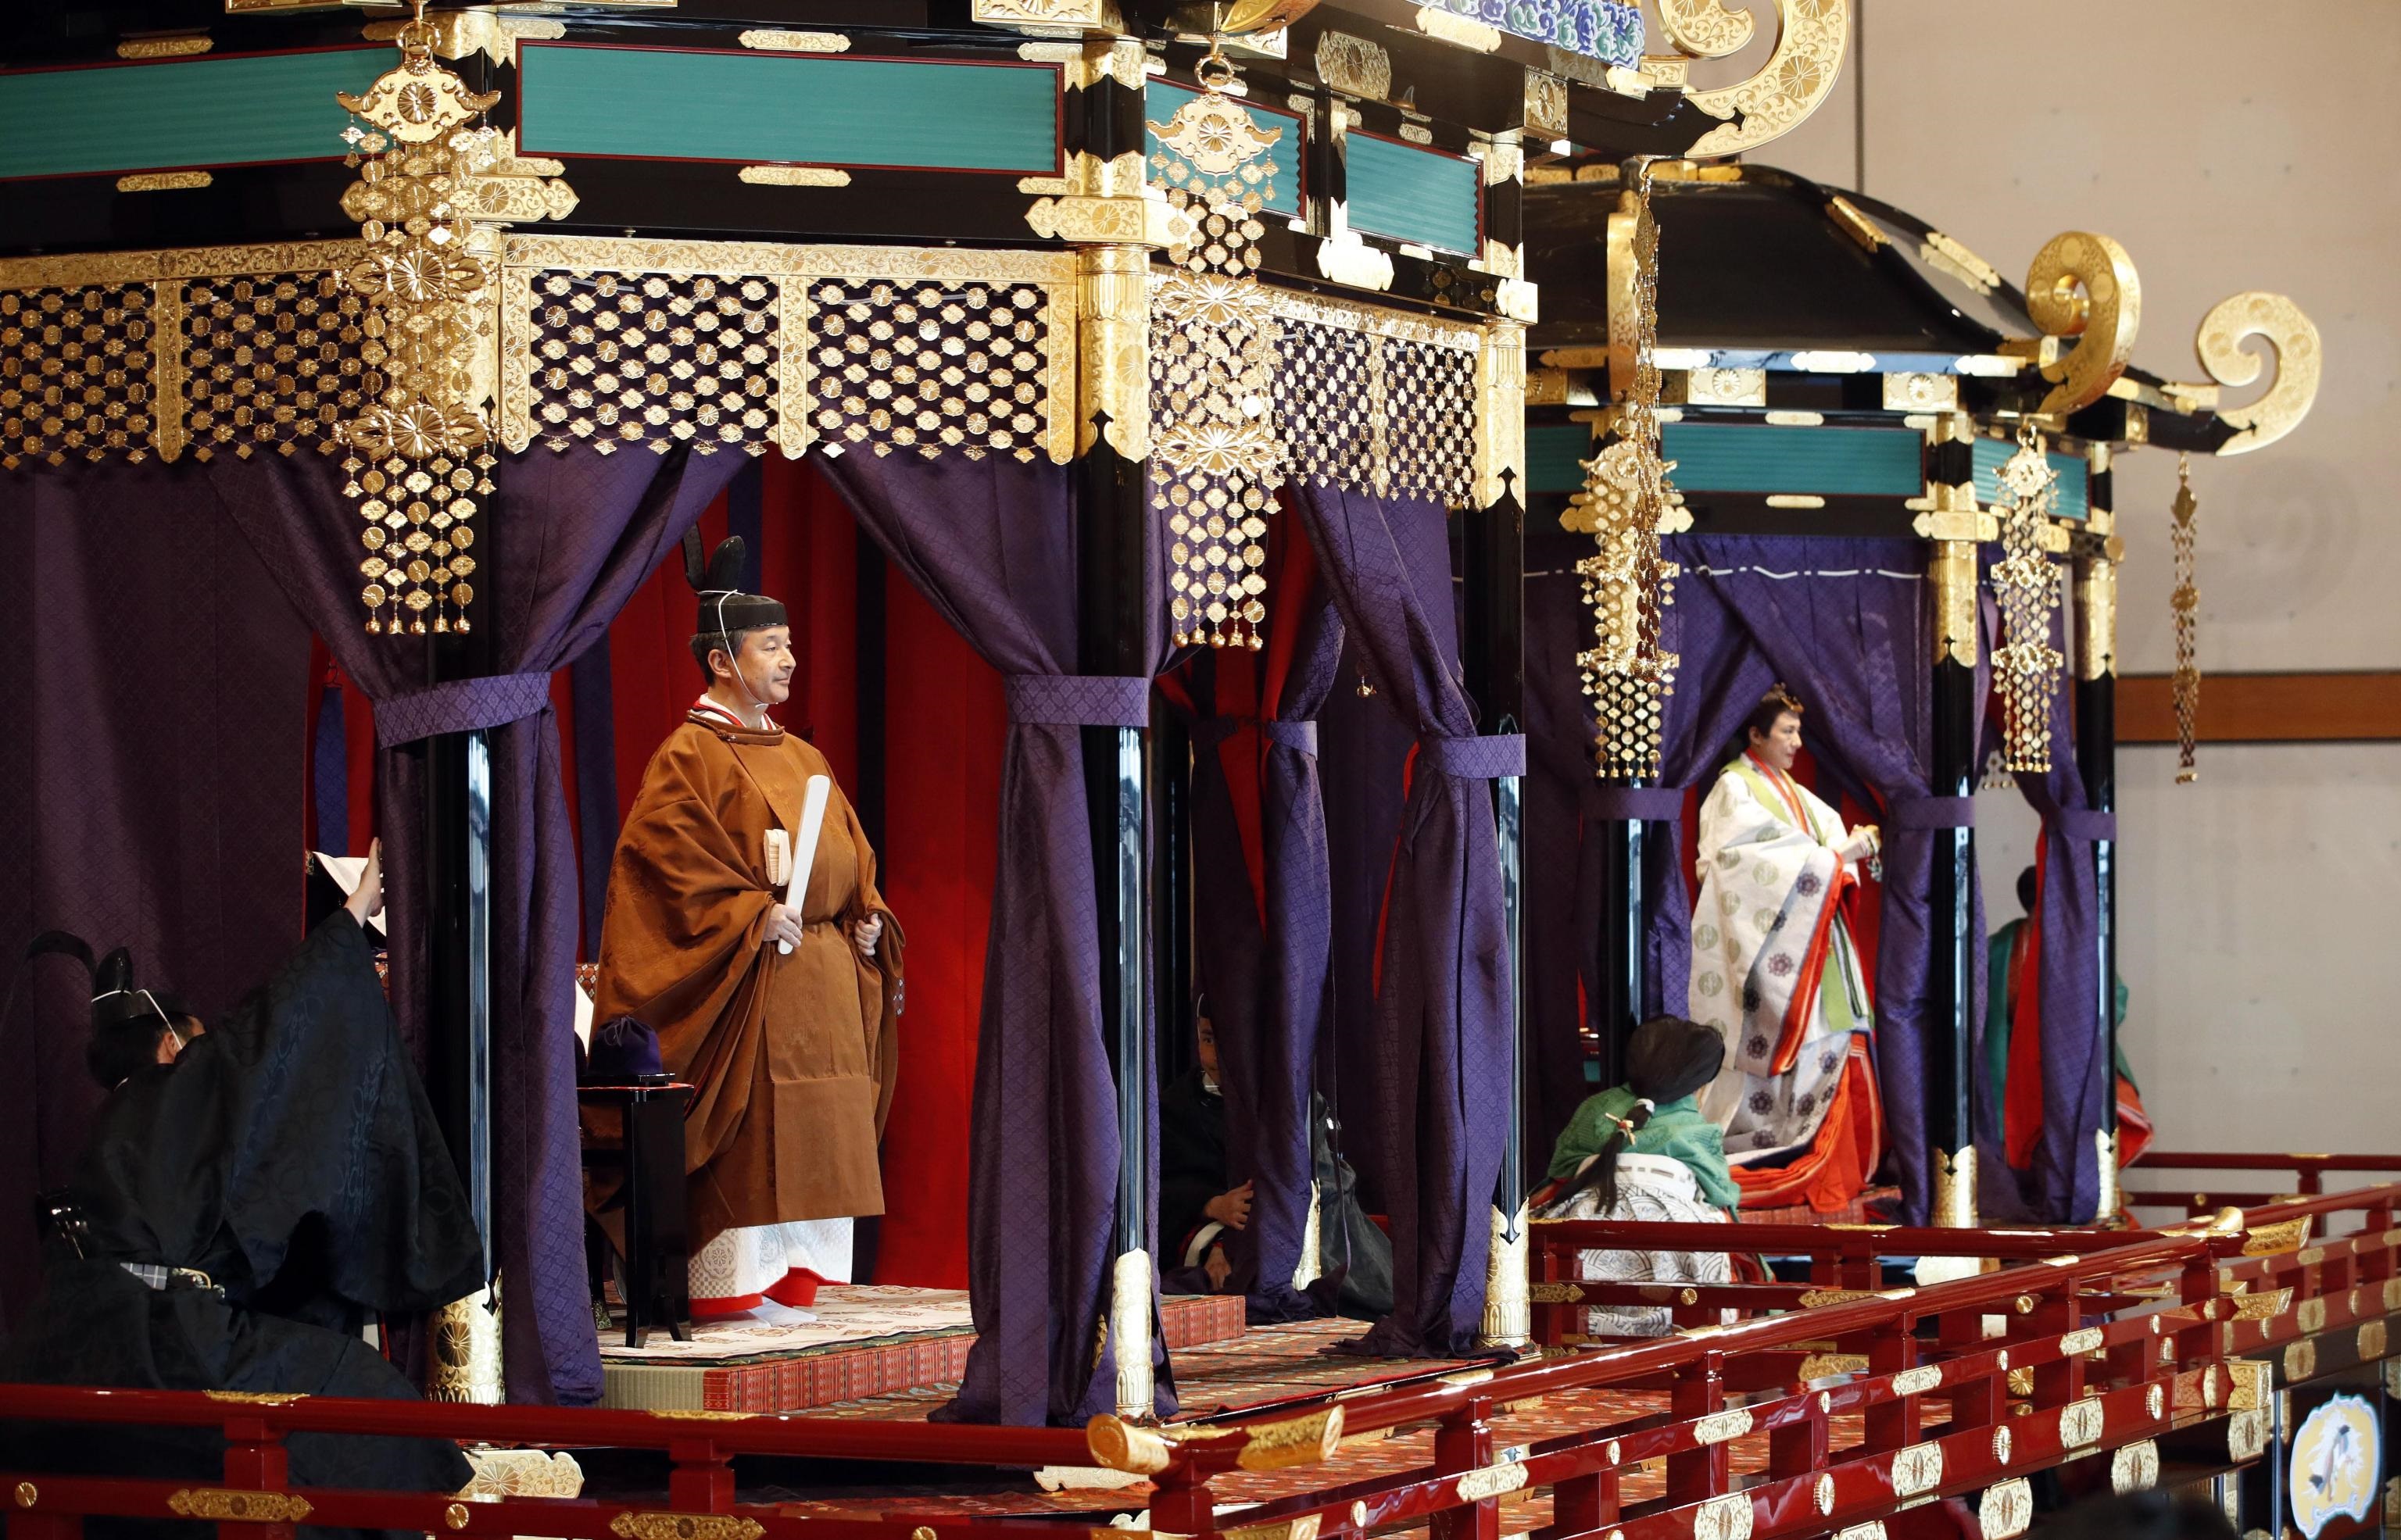 L'imperatore è considerato una sorta di “papa” dello Shintoismo, secondo cui la sua figura ha forti connotazioni religiose